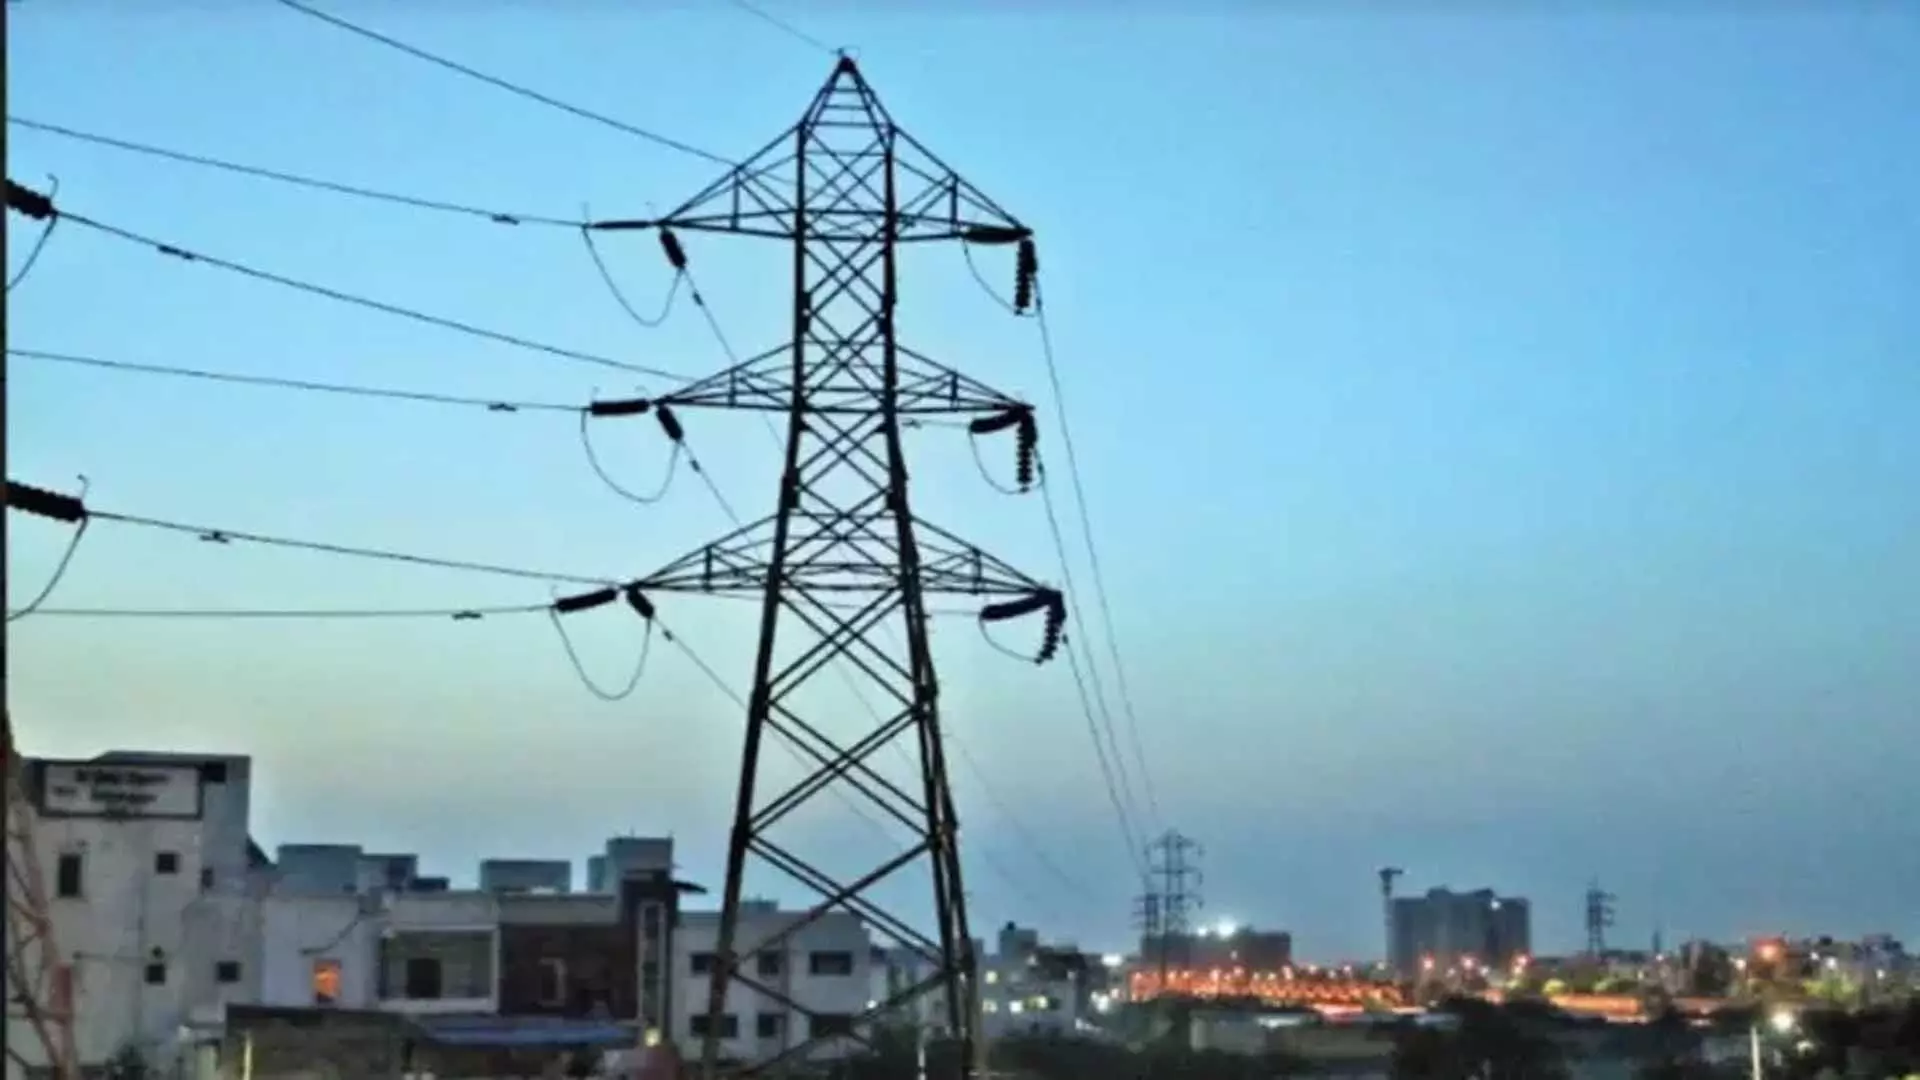 तमिलनाडु की अधिकतम बिजली मांग सोमवार को 20,000 मेगावाट के आंकड़े को पार कर गई